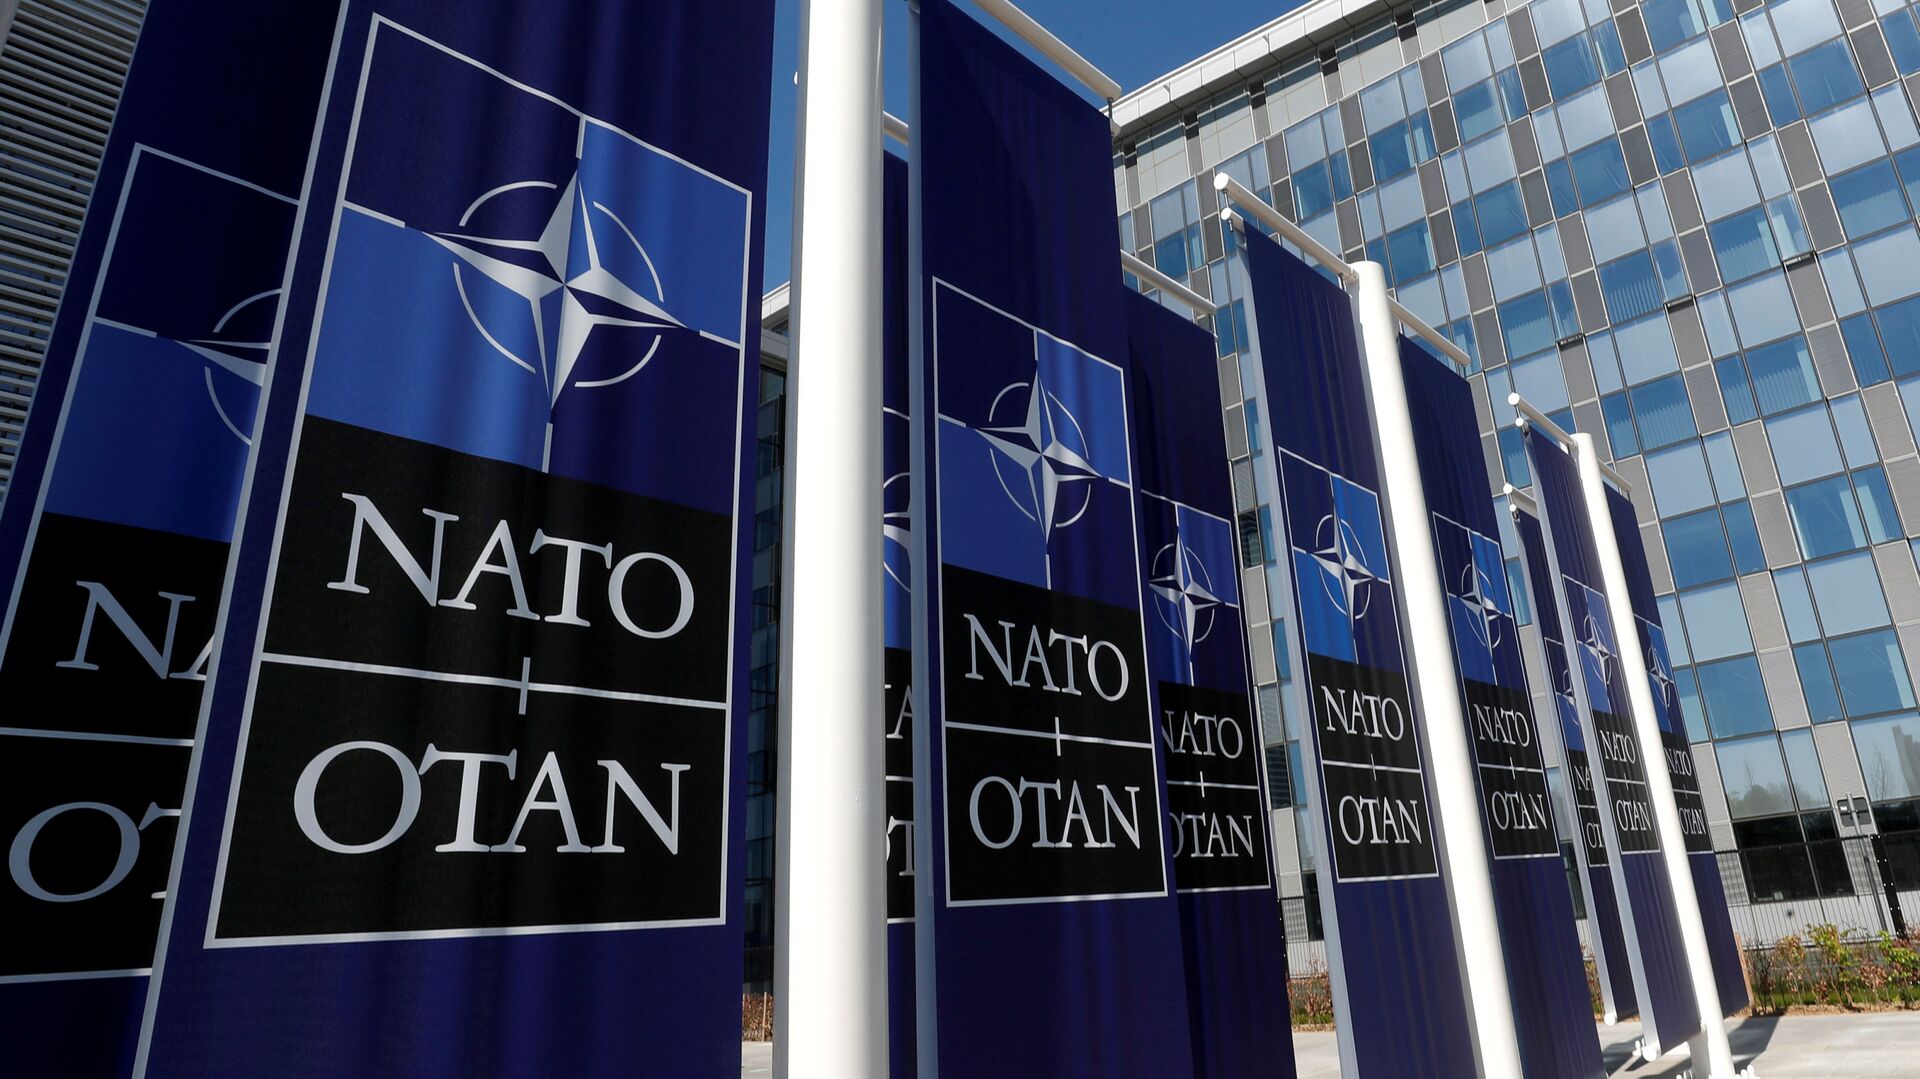 Баннеры с логотипом НАТО у входа в новую штаб-квартиру НАТО - Sputnik Беларусь, 1920, 15.06.2021